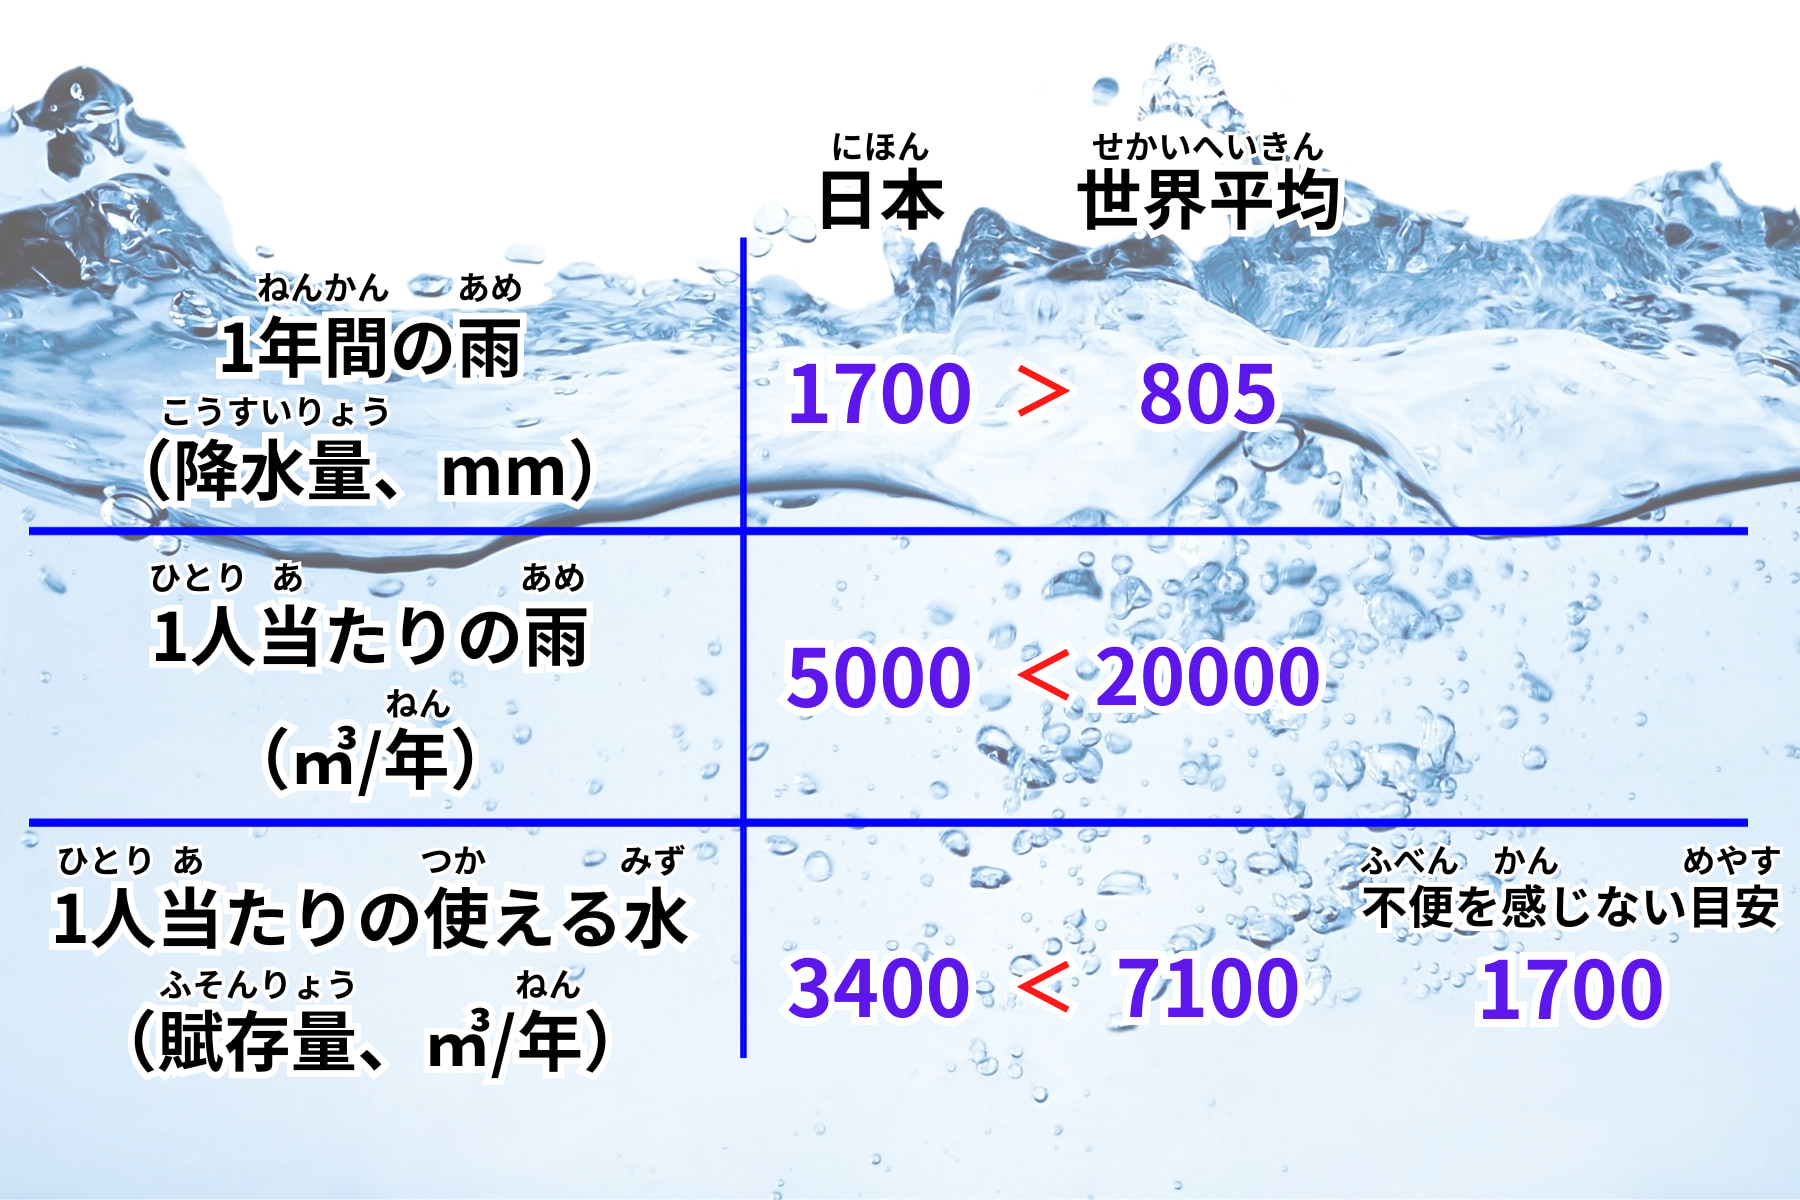 降水量、１人当たり降水量、１人当たりの水賦存量について日本と世界平均との比較